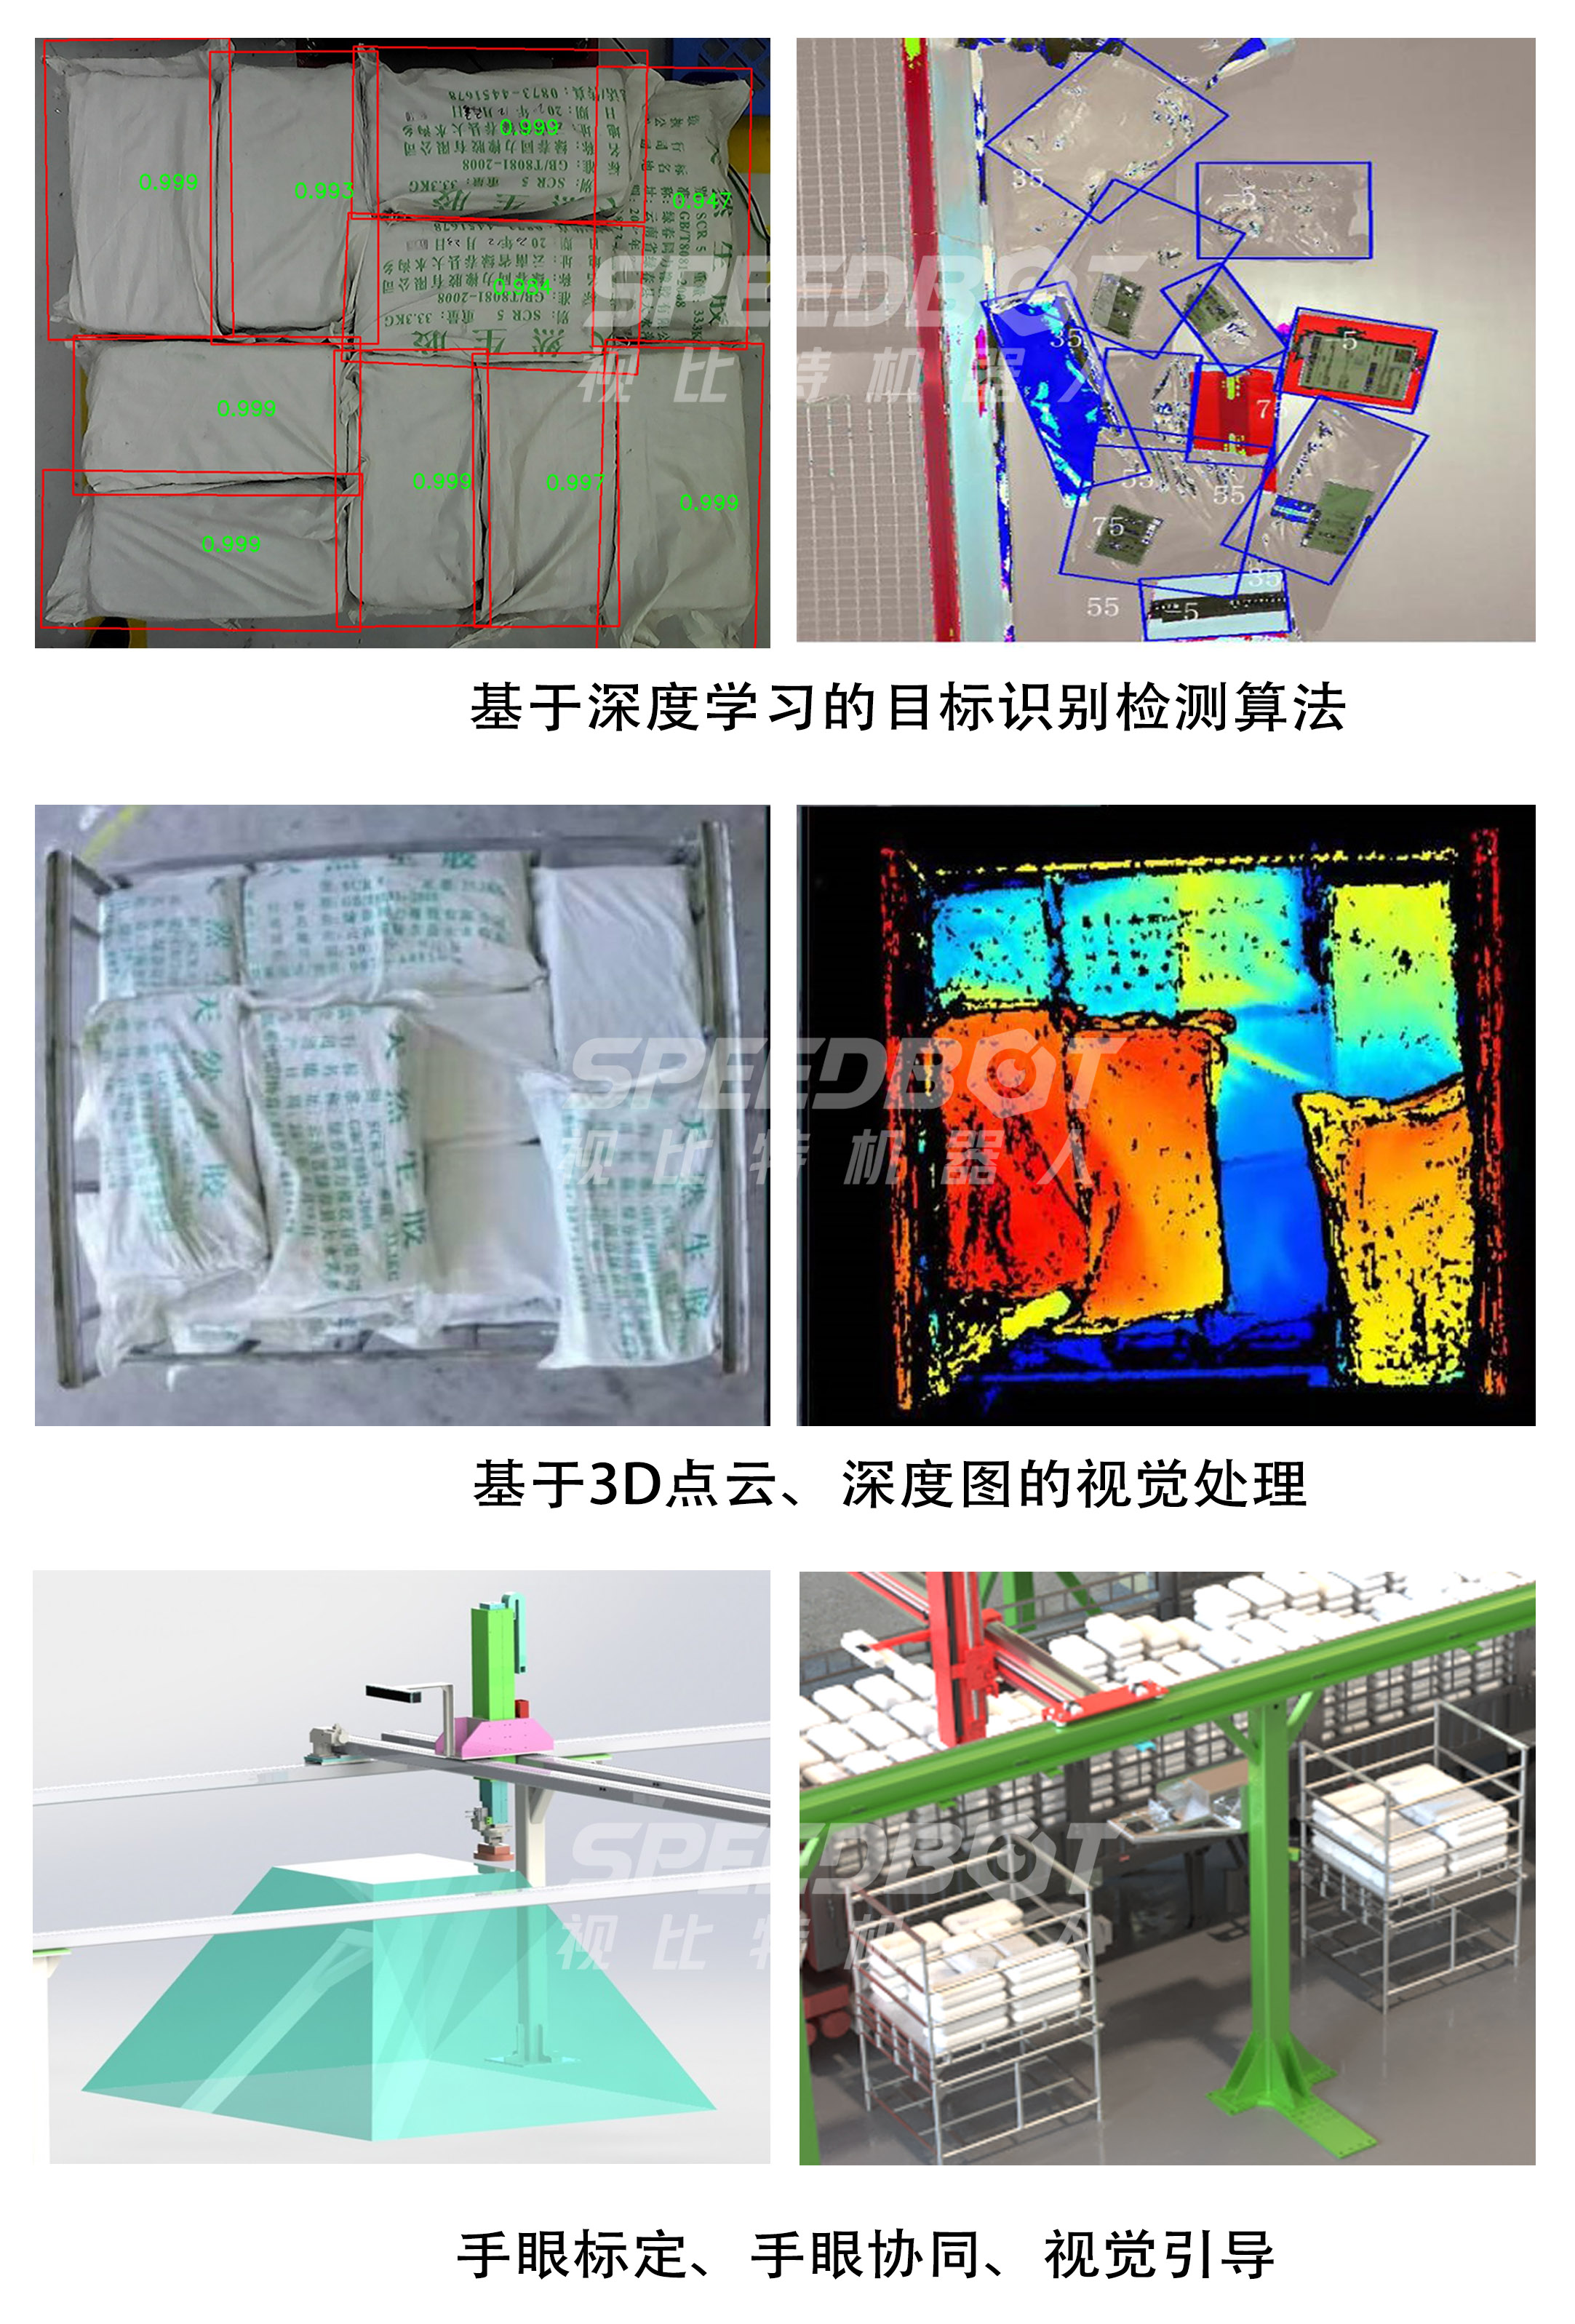 视比特“AI+3D视觉”产品系列 | 智能自动装卸车系统 --3D视觉硬核产品，助力高效货运物流